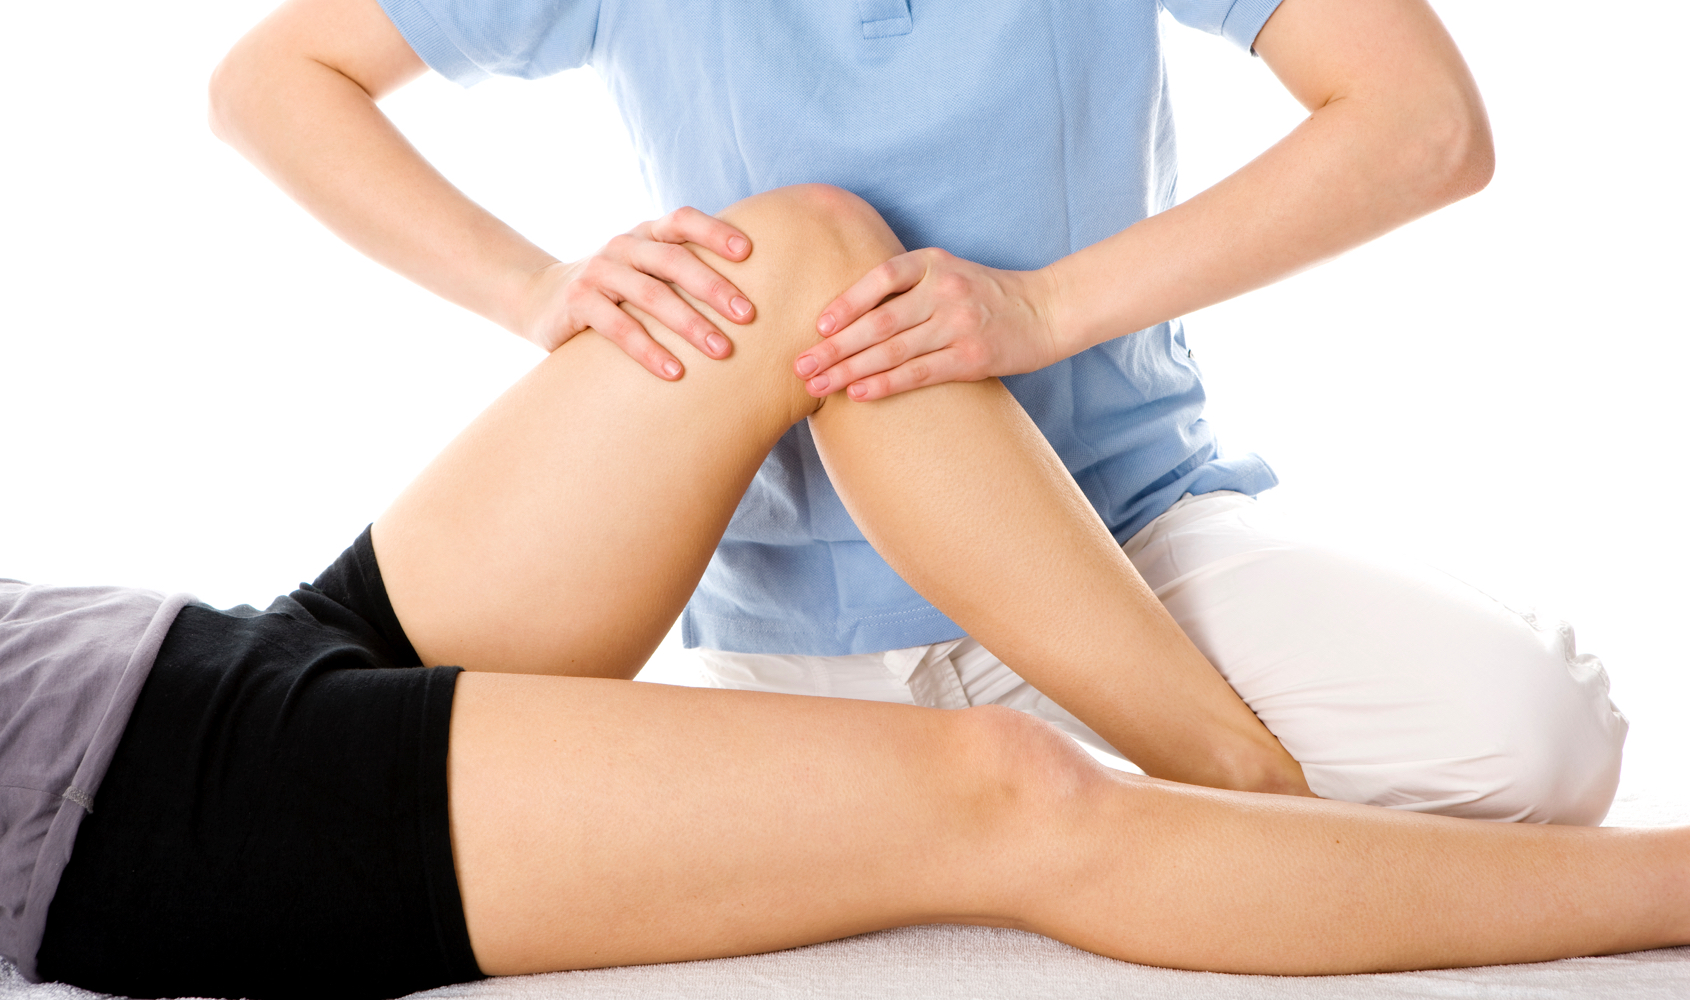 Arthrose du genou : symptômes, diagnostic et traitements